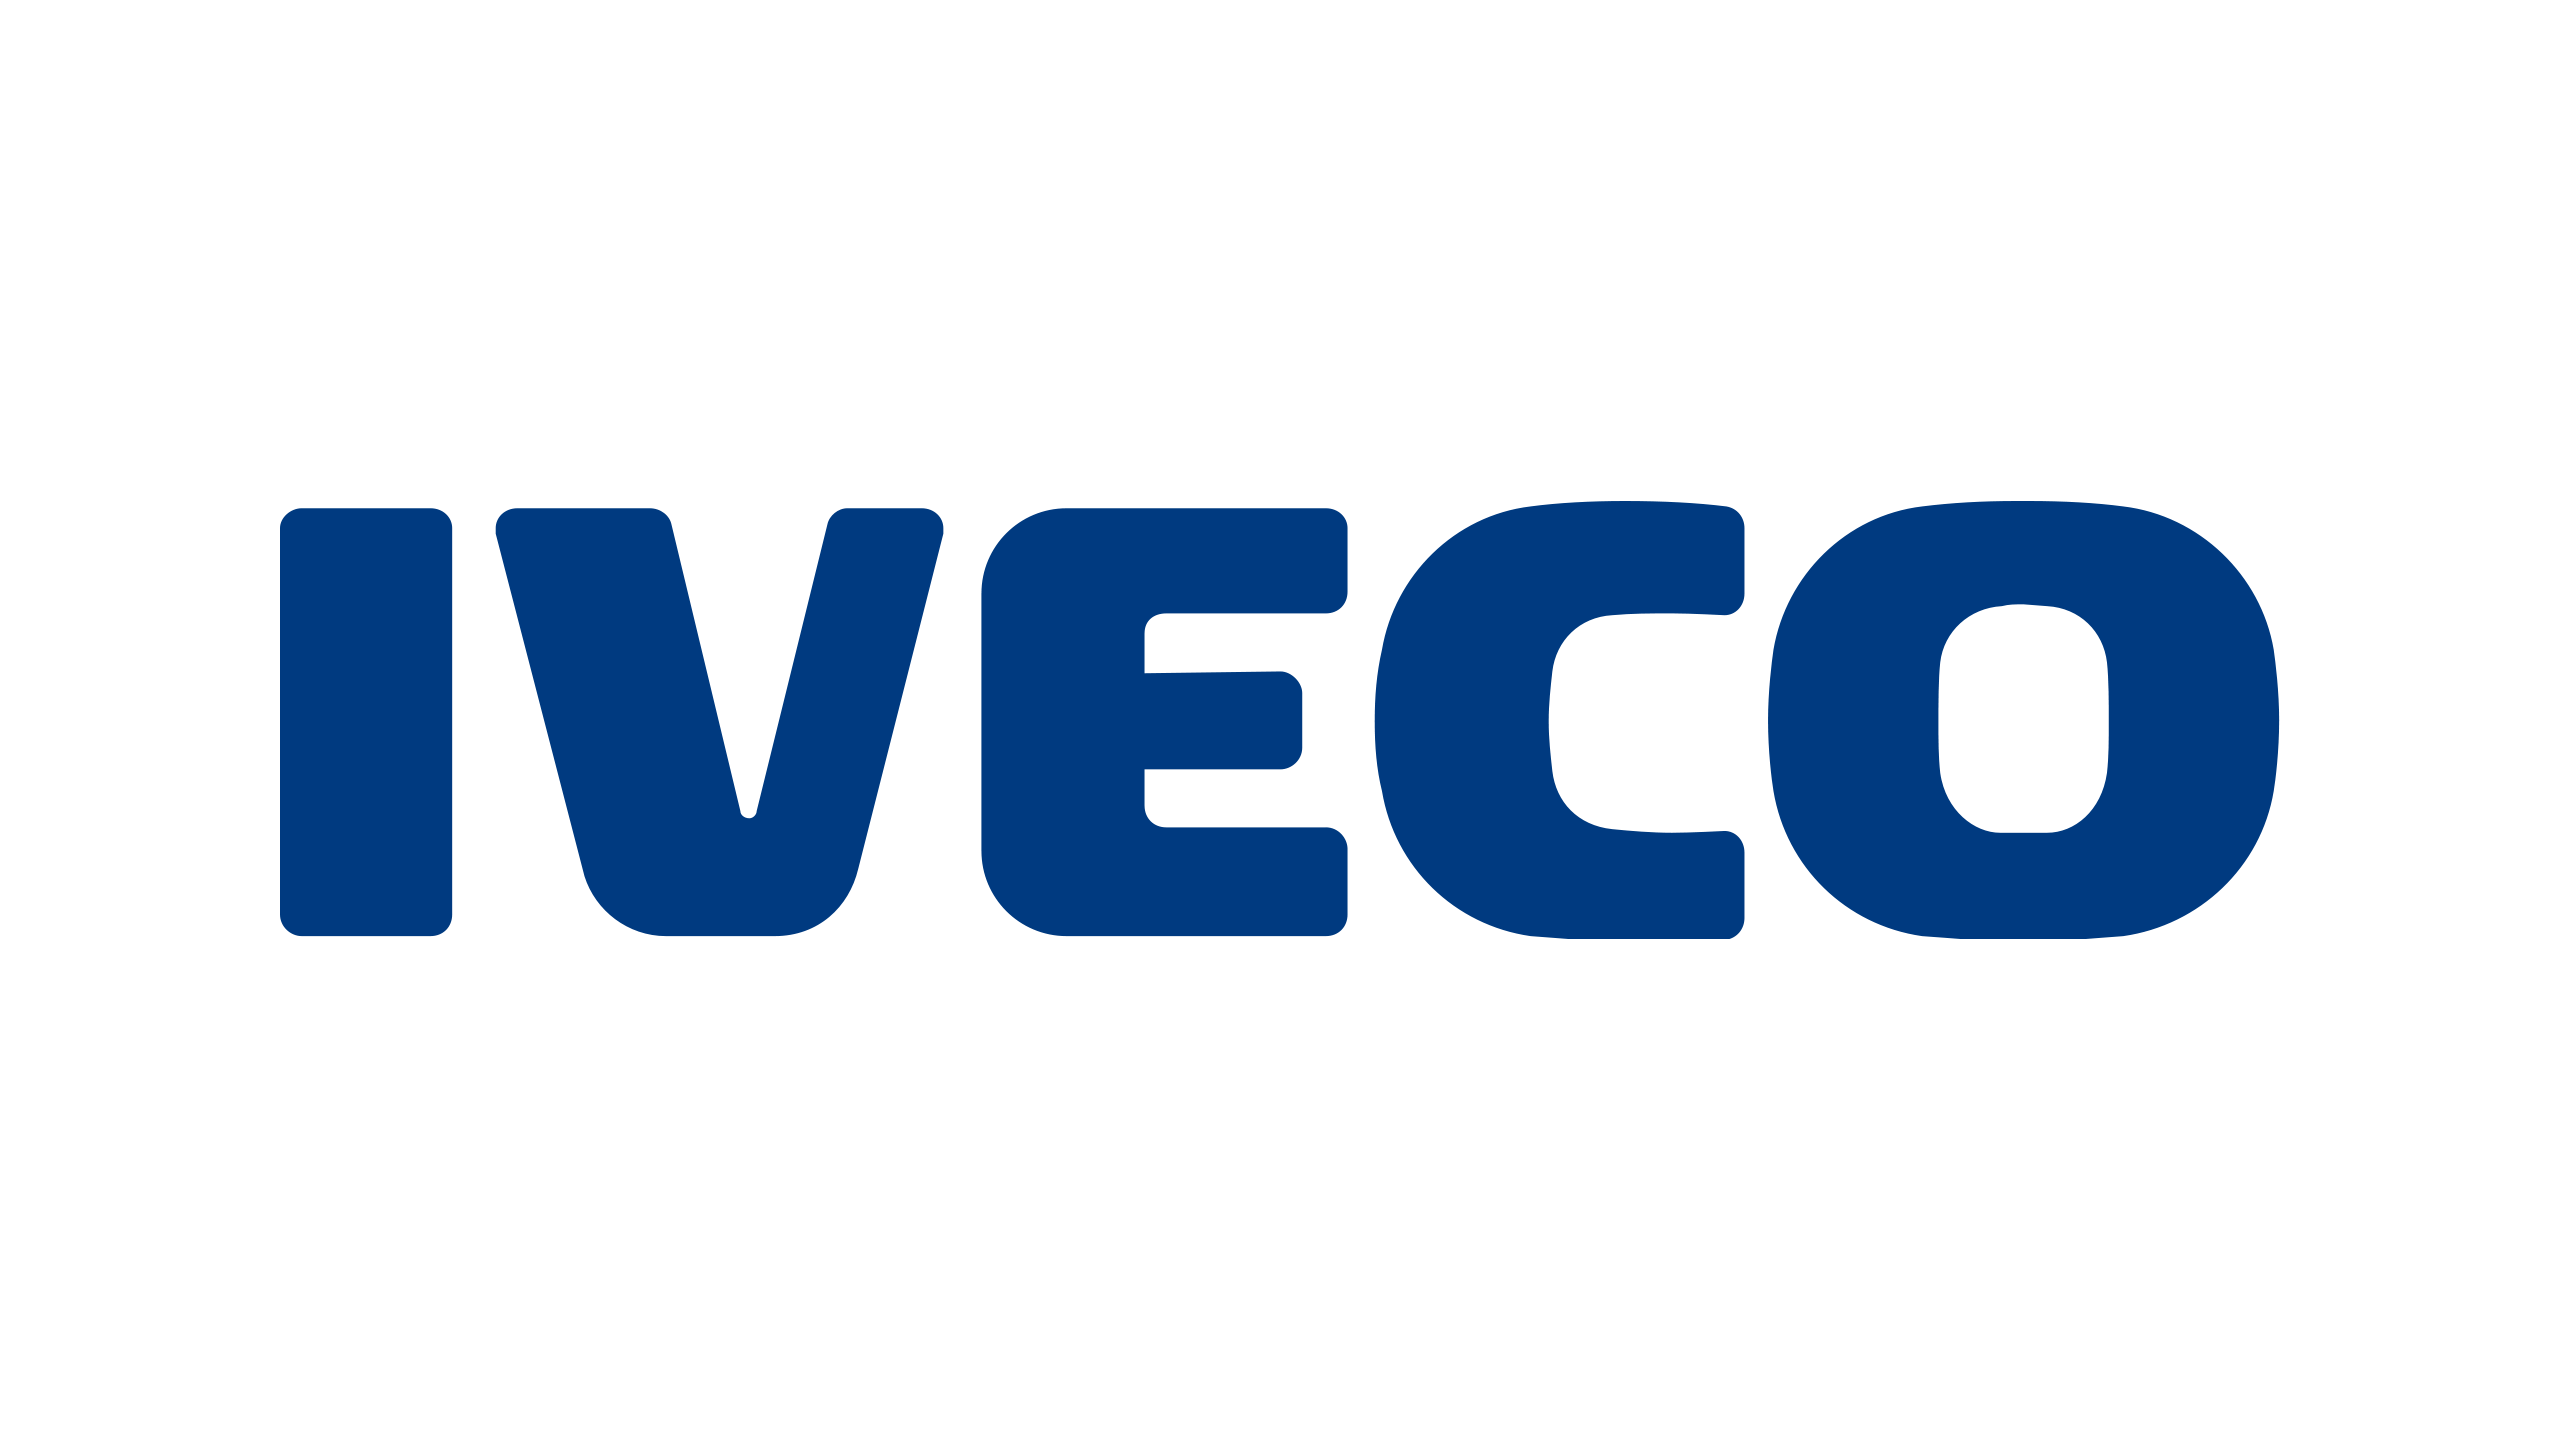 Iveco-logo-blue-2560x1440